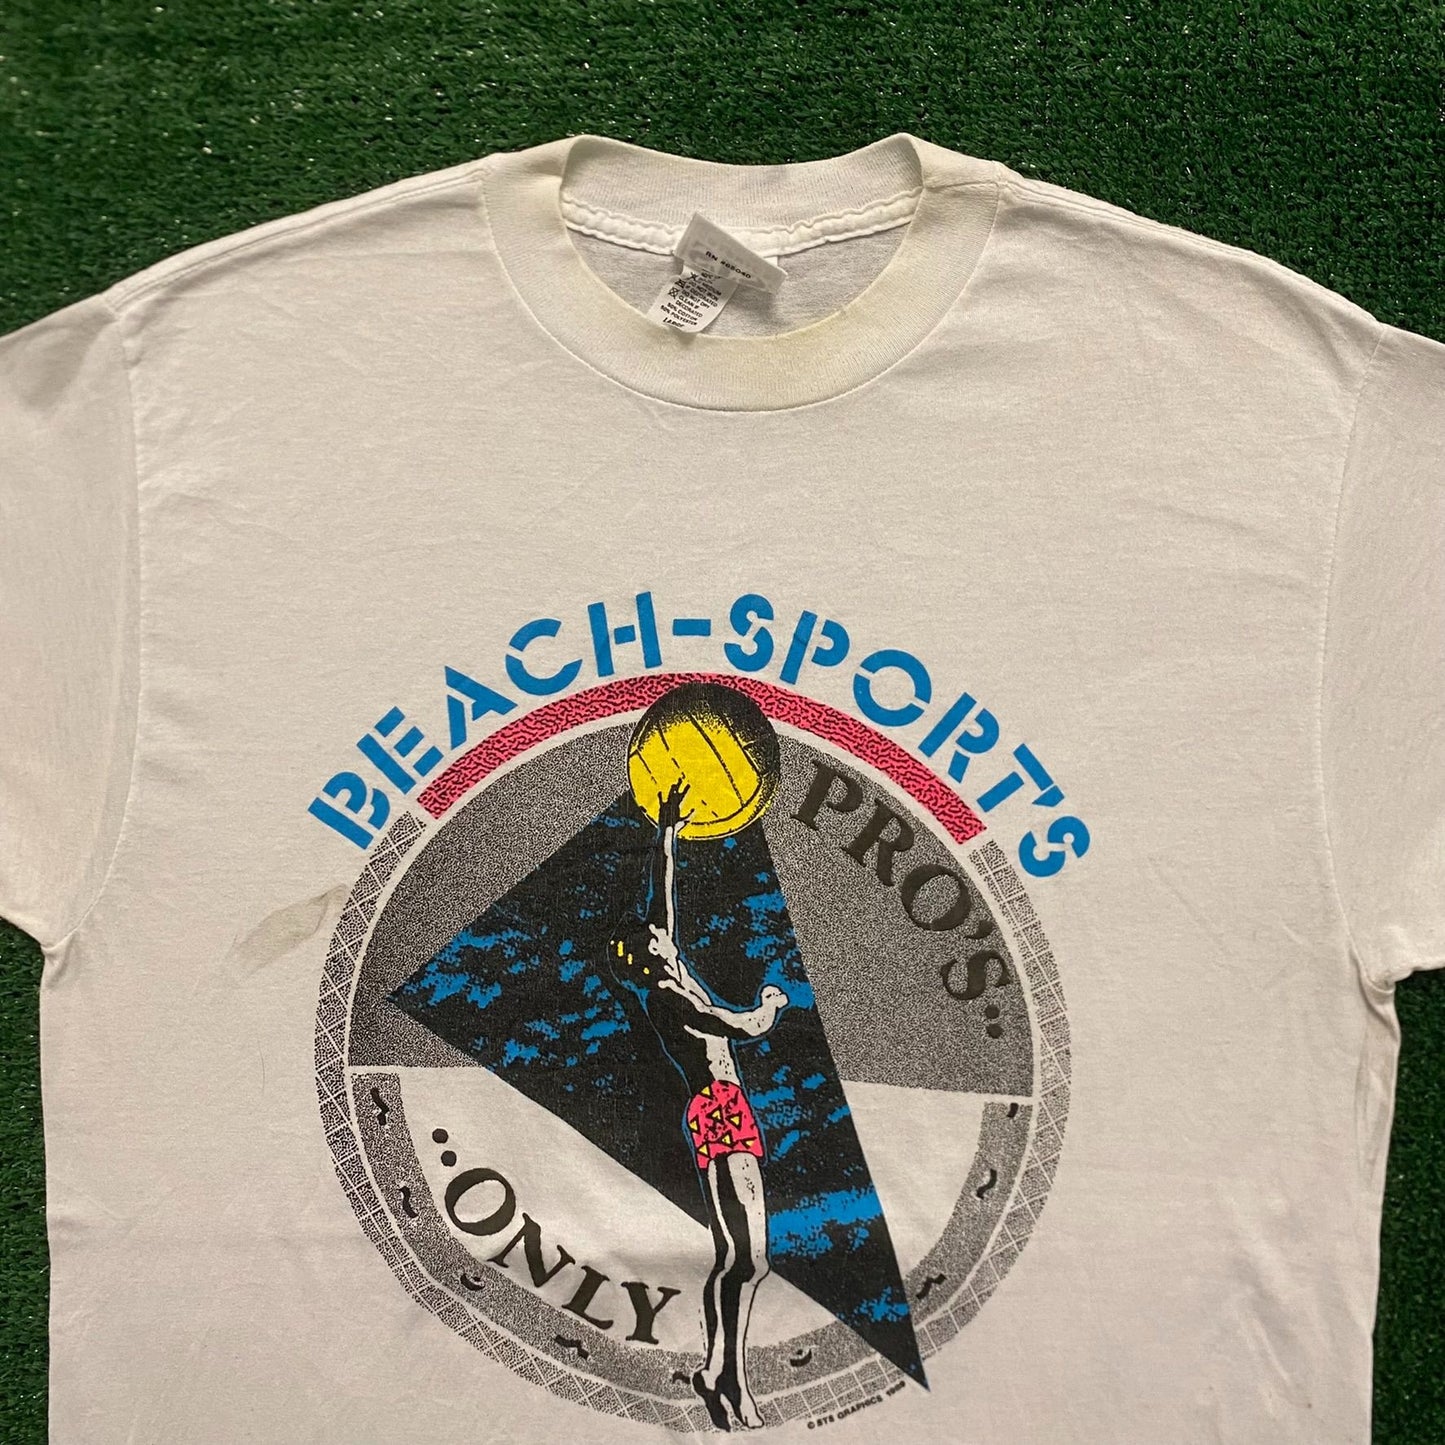 Beach Volleyball Vintage 90s Grunge T-Shirt